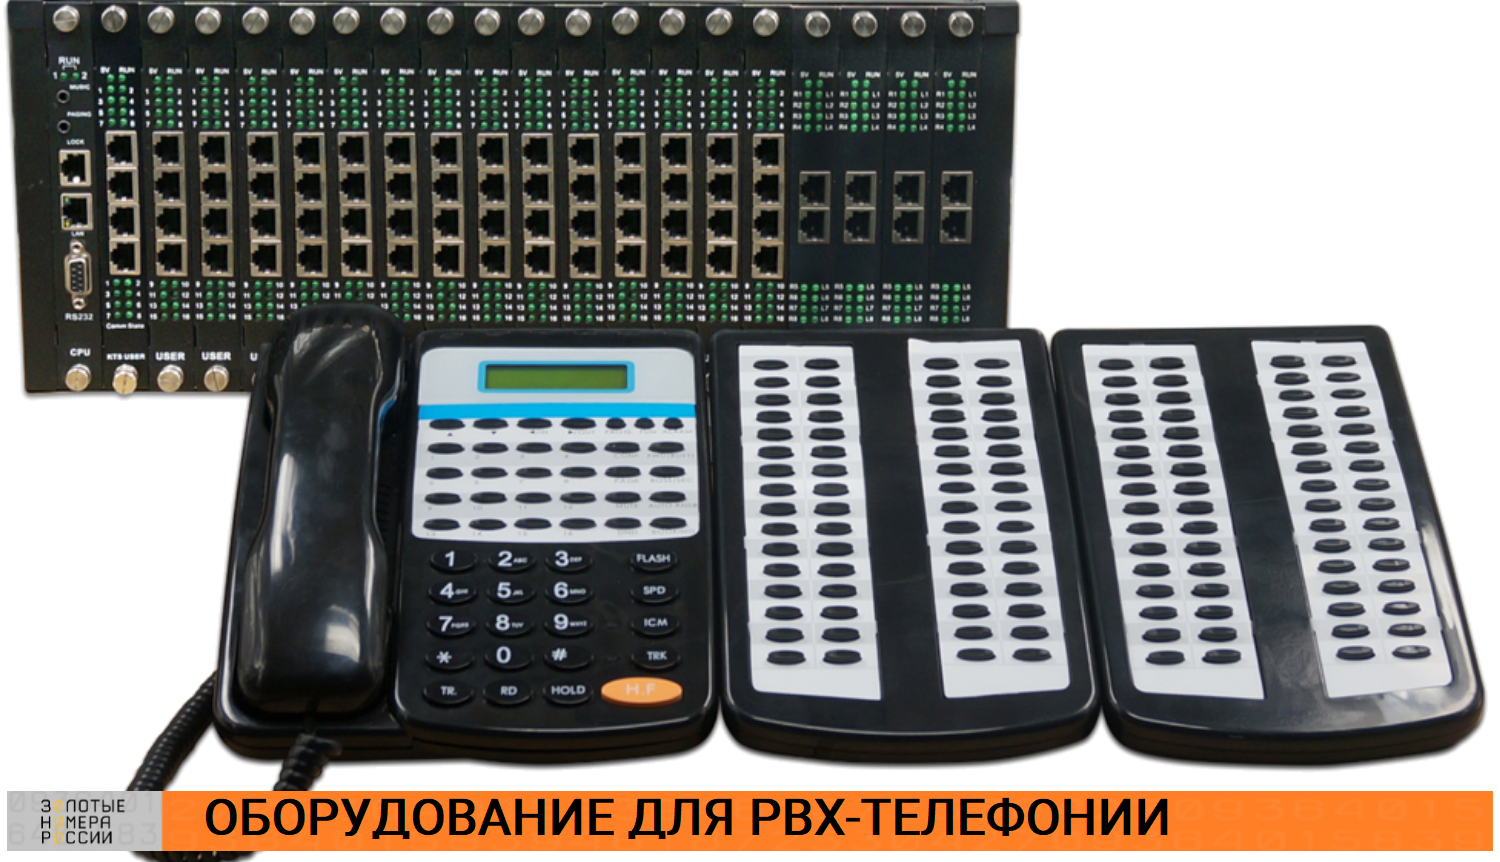 Оборудование для PBX-телефонии